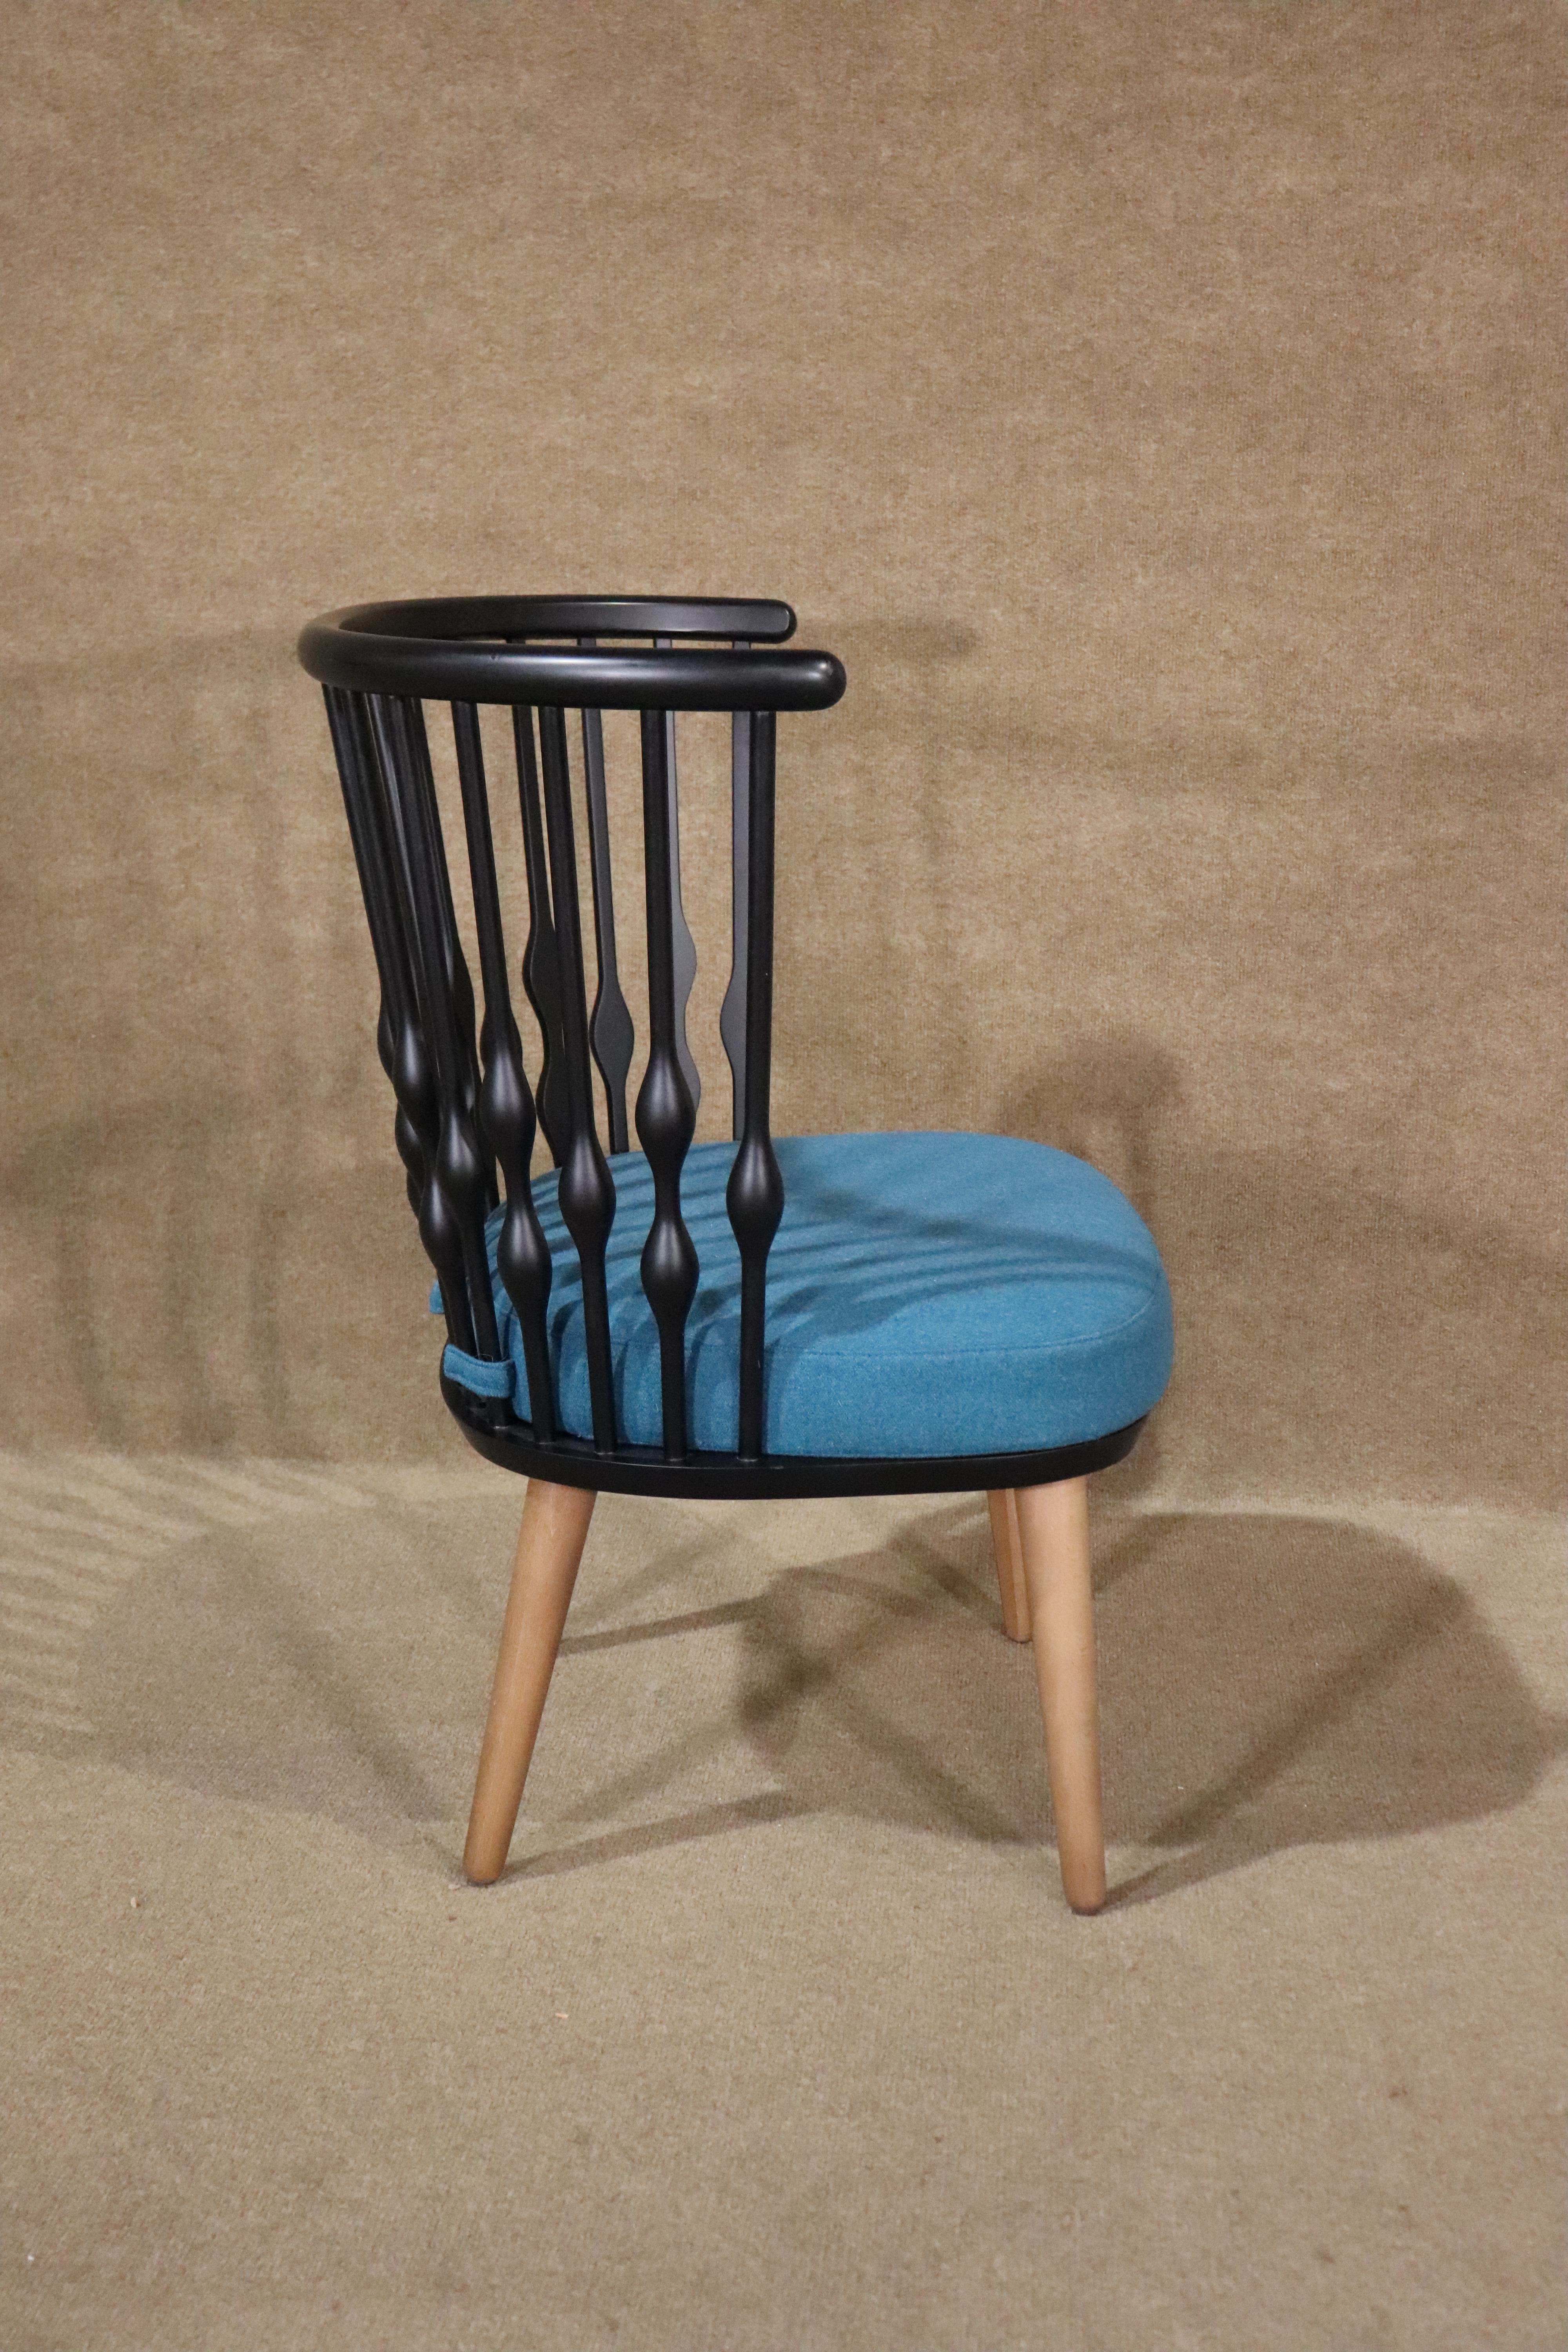 20th Century Patricia Urquiola Designed 'Nub' Chair For Sale